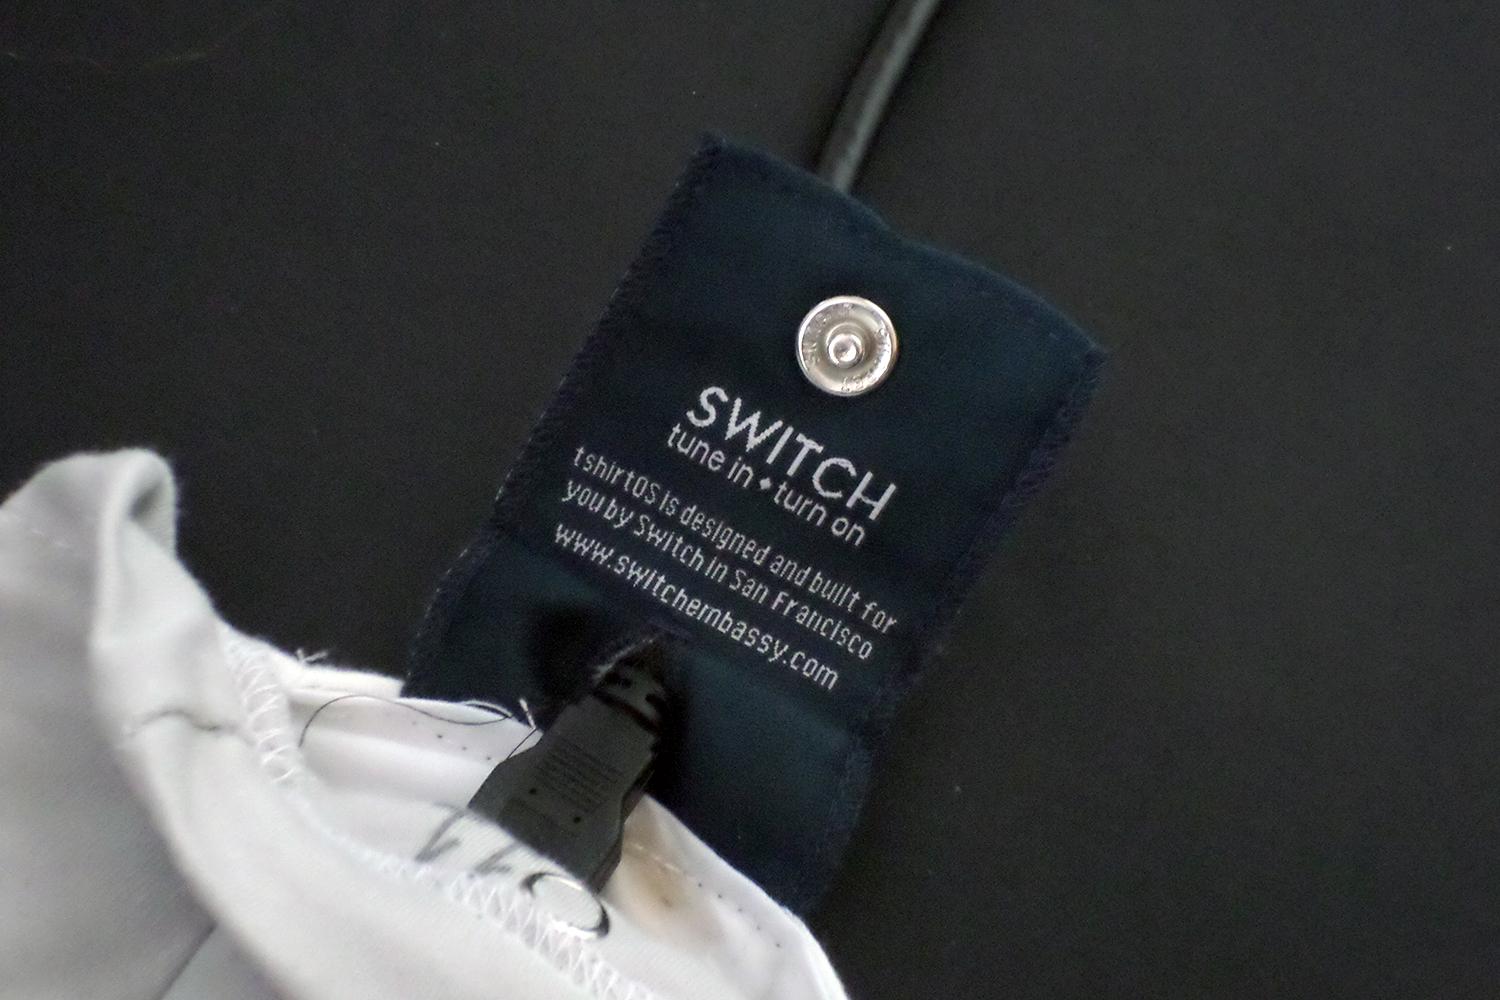 TshirtOS switch